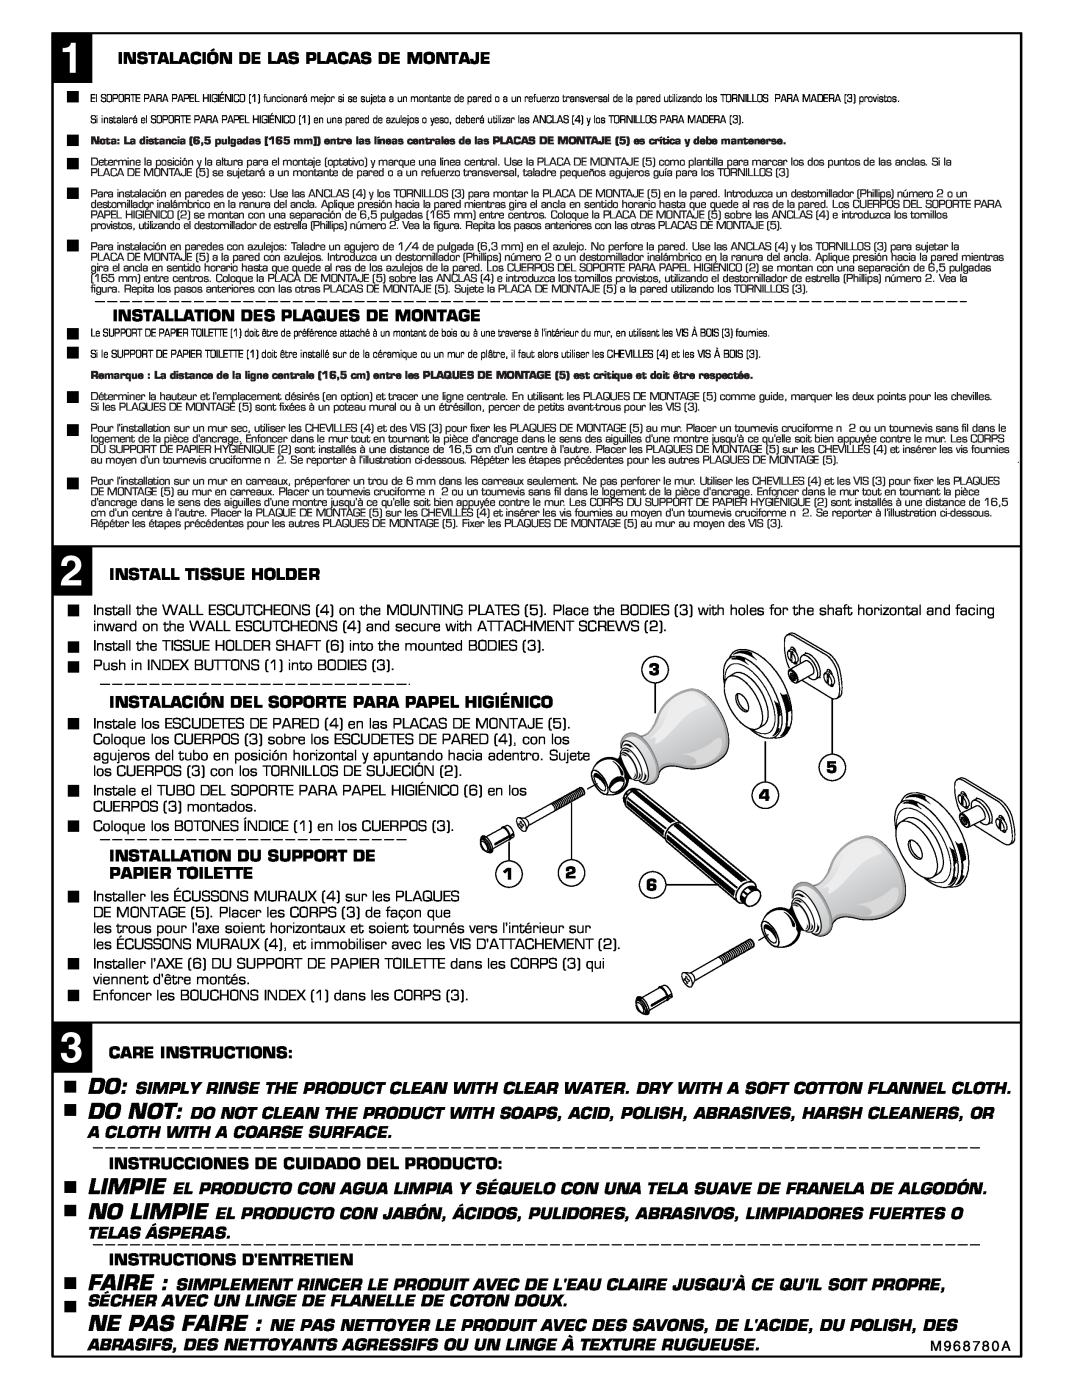 American Standard 2923 installation instructions Instalación De Las Placas De Montaje 